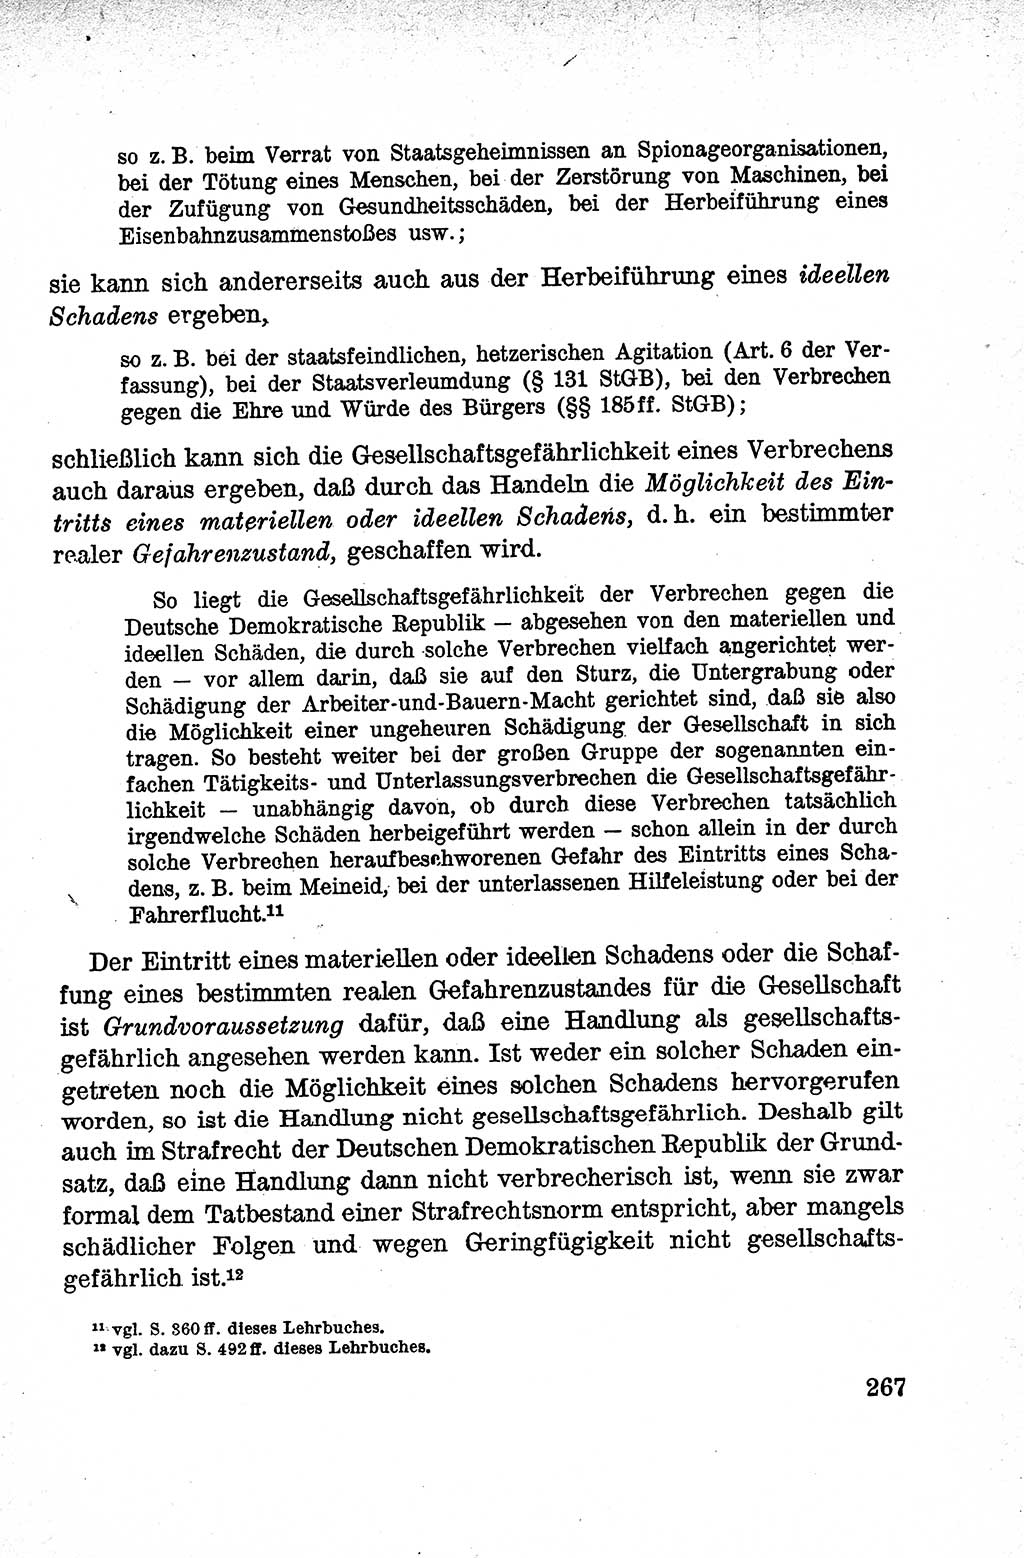 Lehrbuch des Strafrechts der Deutschen Demokratischen Republik (DDR), Allgemeiner Teil 1959, Seite 267 (Lb. Strafr. DDR AT 1959, S. 267)